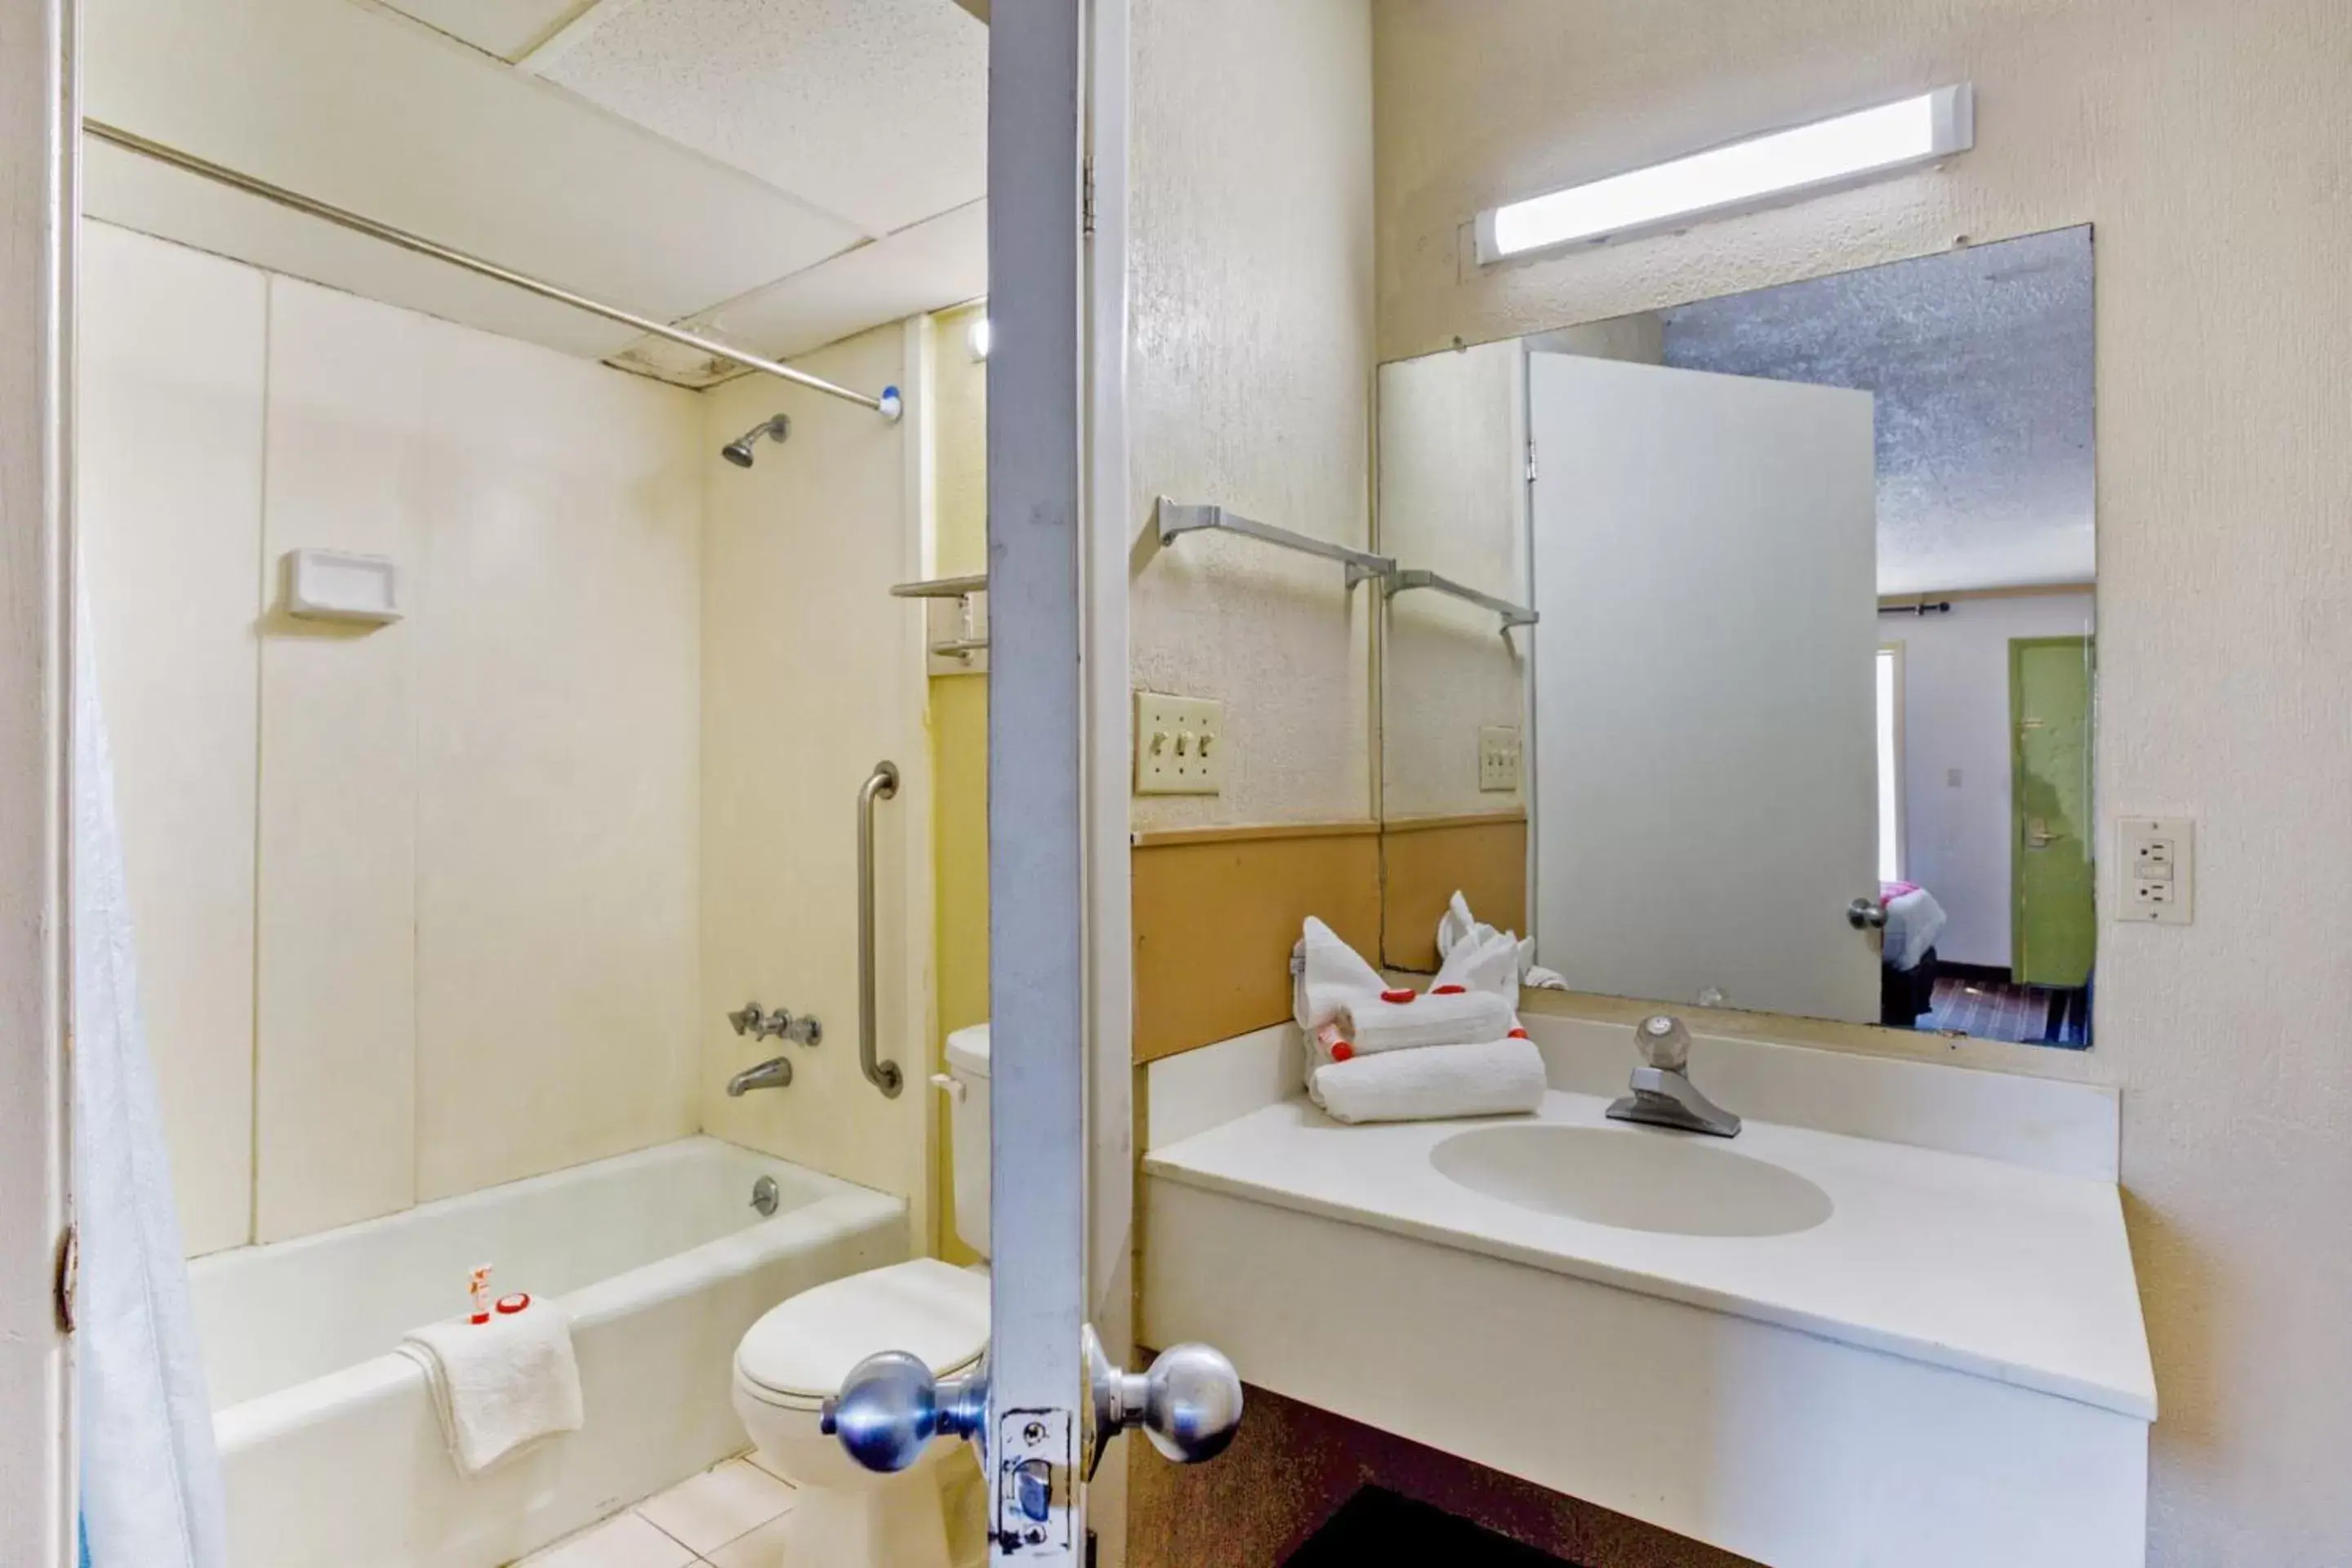 Toilet, Bathroom in OYO Hotel Pensacola I-10 & Hwy 29